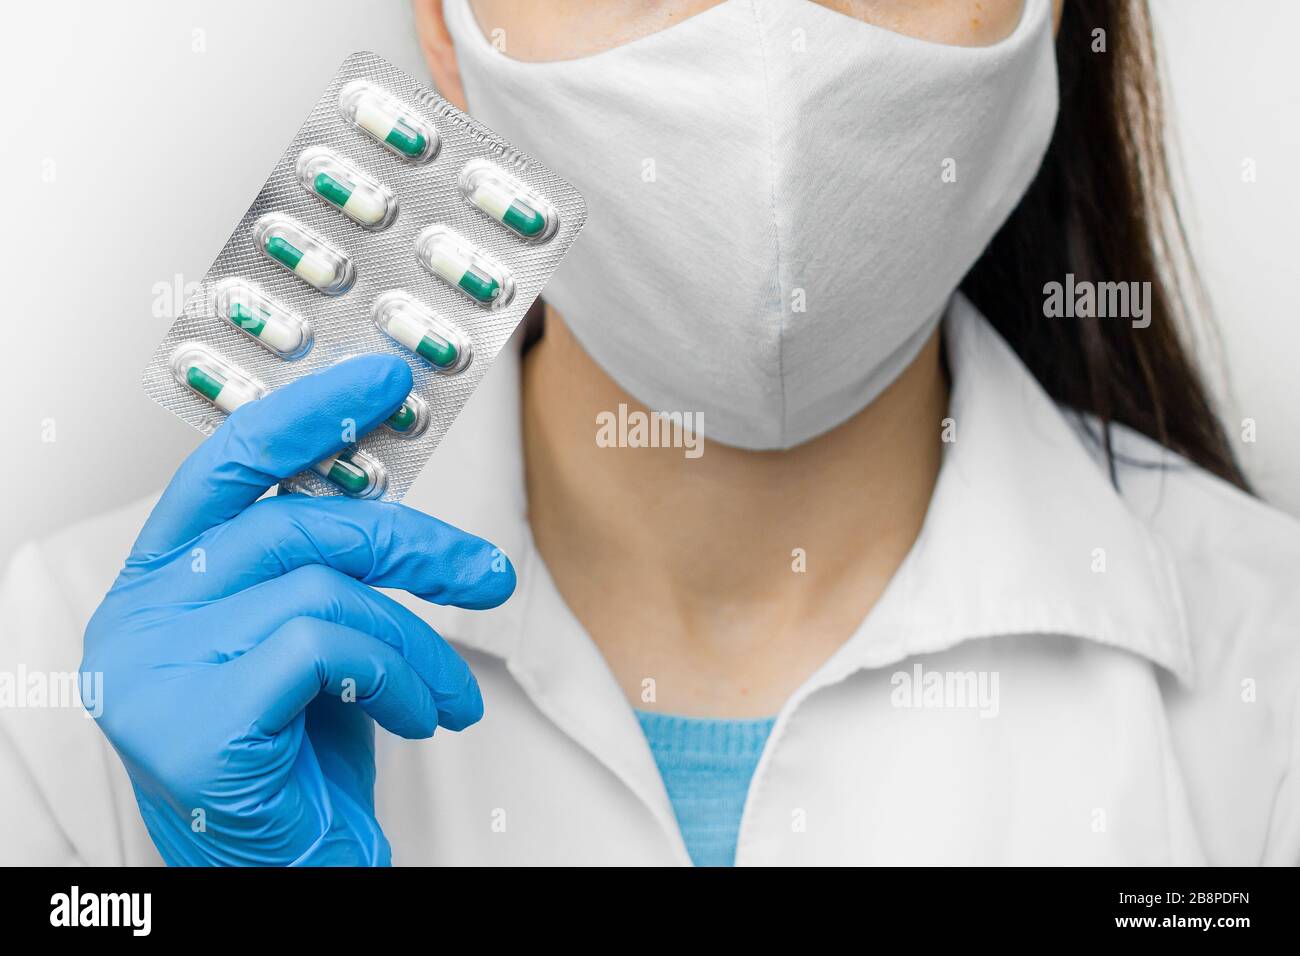 Prevenzione del coronavirus assunzione di vitamine per rafforzare l'immunità. Medico in maschera protettiva e guanti blu con pillole nelle mani. Foto Stock